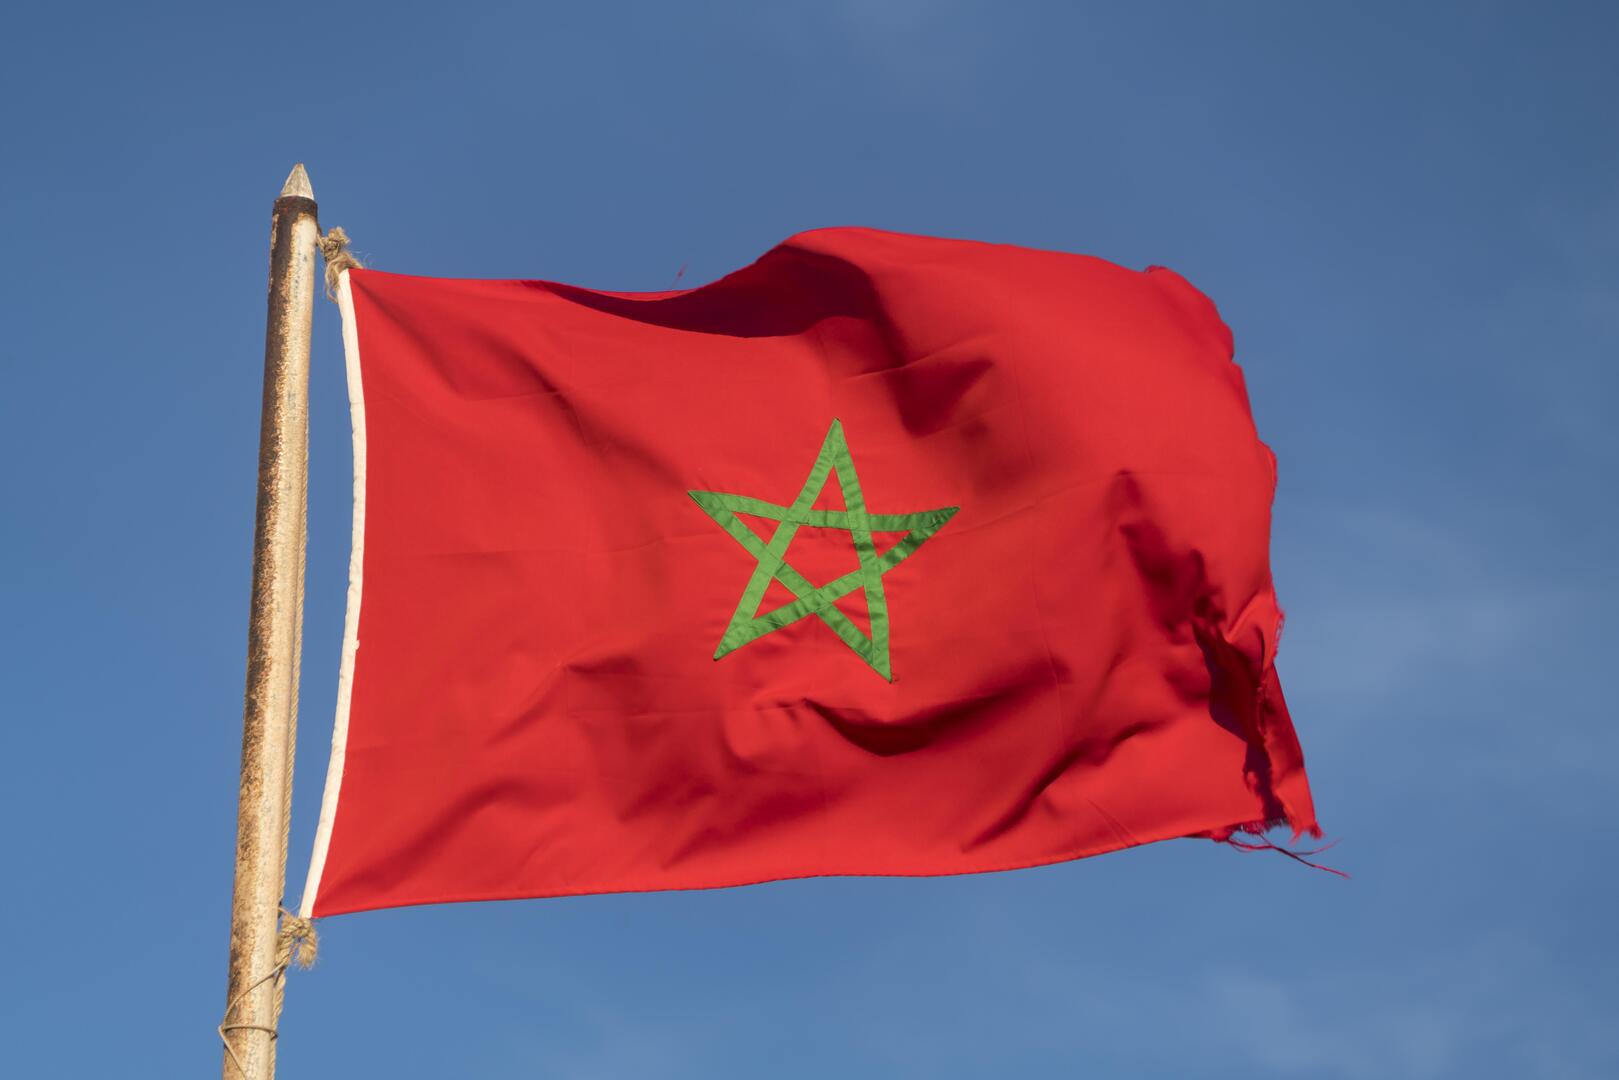 المغرب يرد على اتهام الجزائر له بقتل 3 جزائريين في الصحراء الغربية